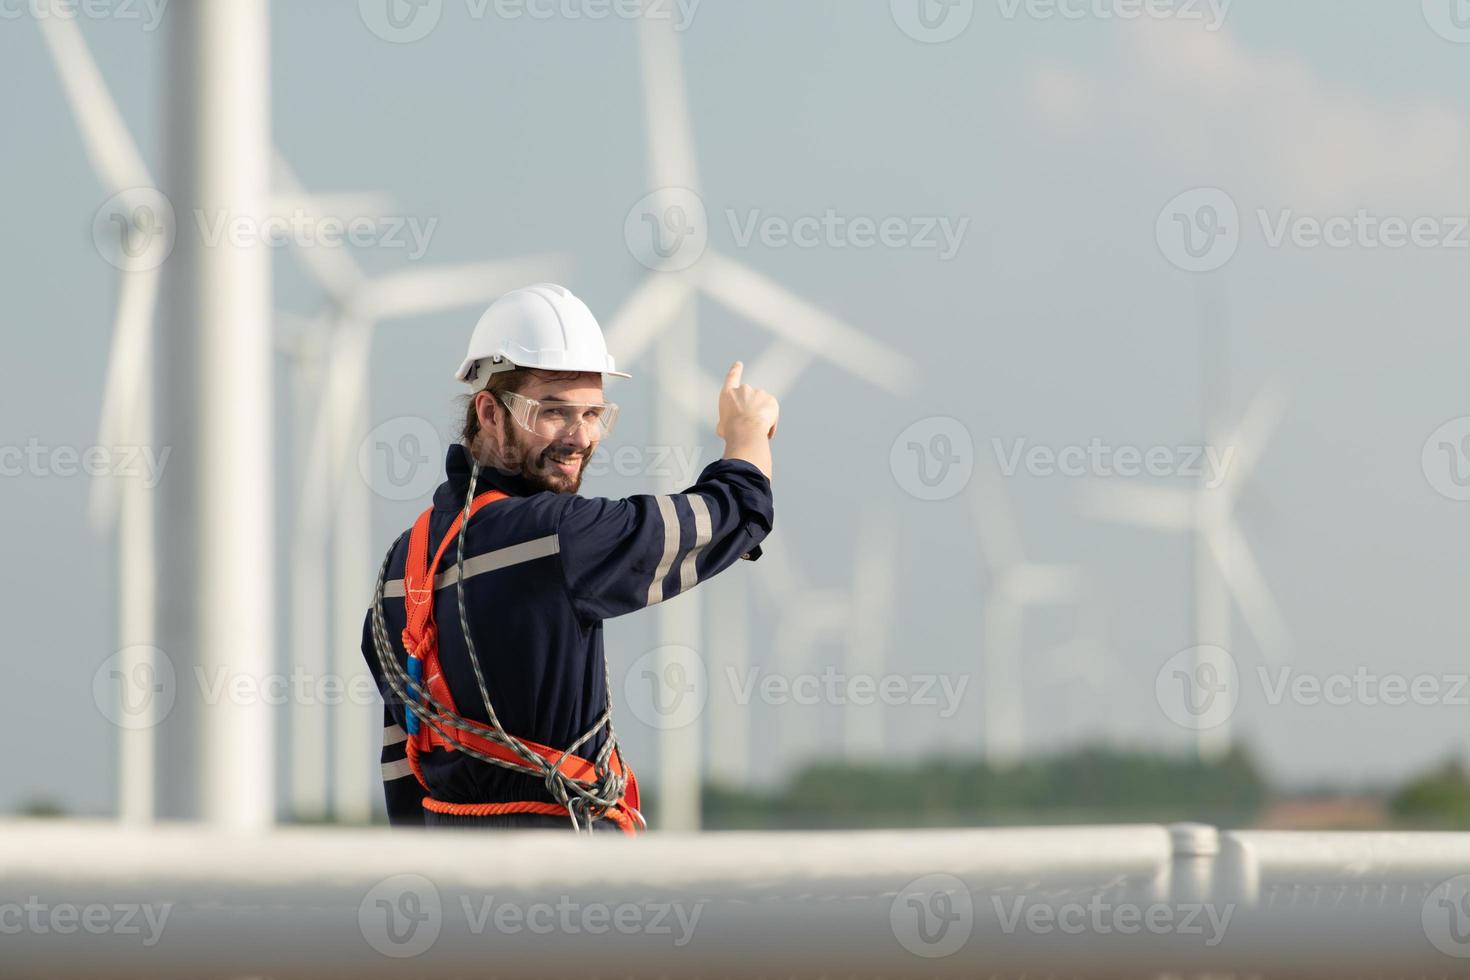 ingeniero a natural energía viento turbina sitio con un misión a escalada arriba a el viento turbina cuchillas a inspeccionar el operación de grande viento turbinas ese convierte viento energía dentro eléctrico energía foto